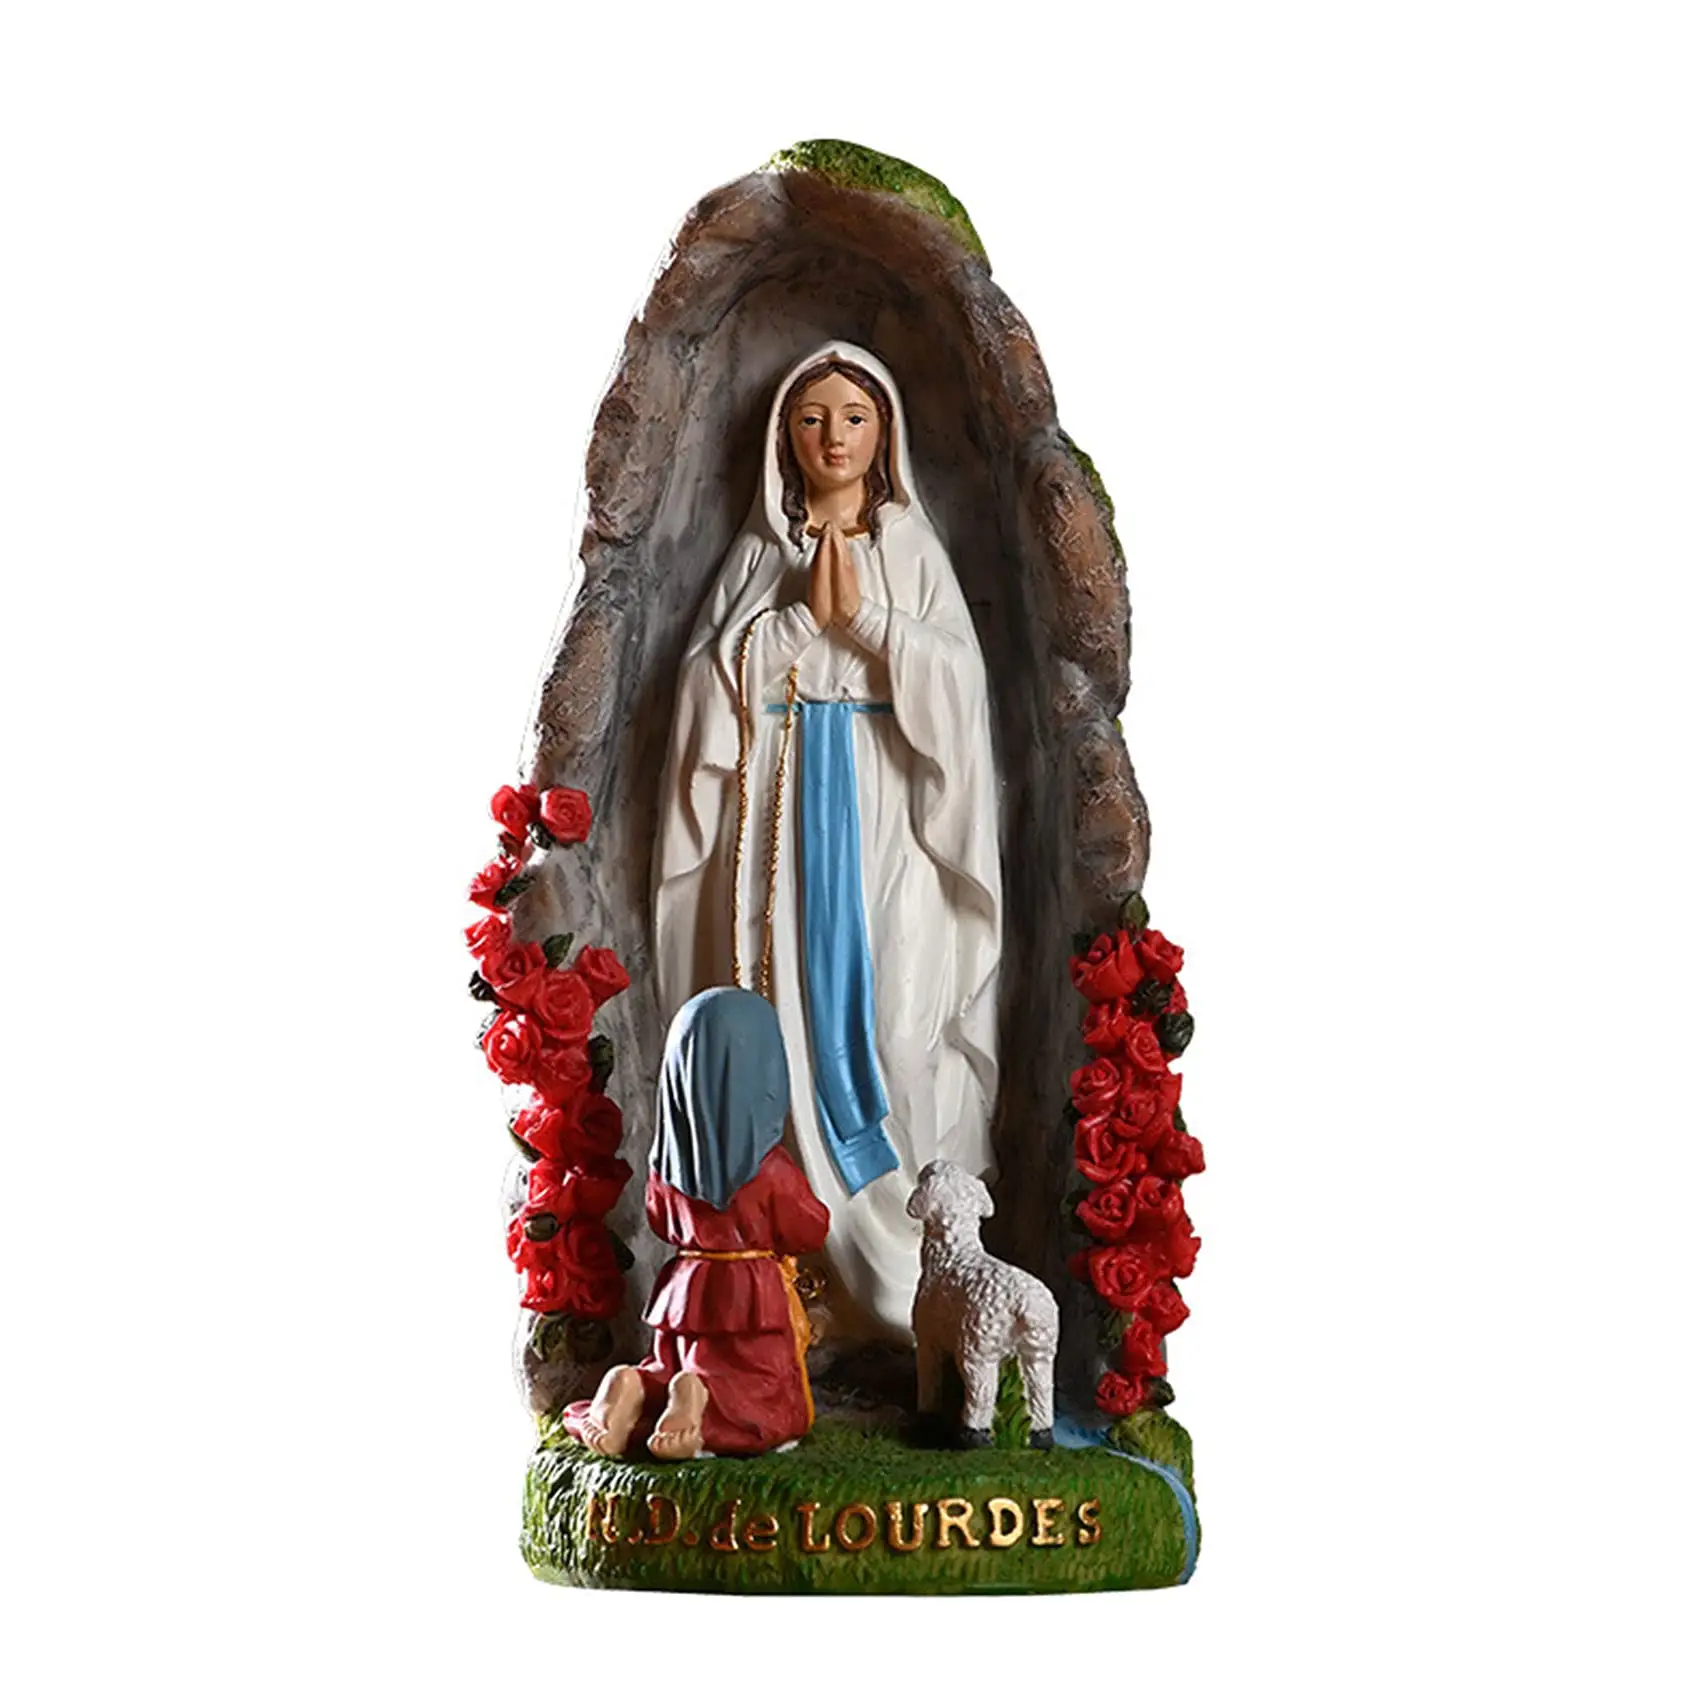 Katholische Statue Unserer Lieben Frau von Lourdes 8 Zoll betende figuren der seligen Jungfrau Mutter Maria katholische religiöse Heimdekoration